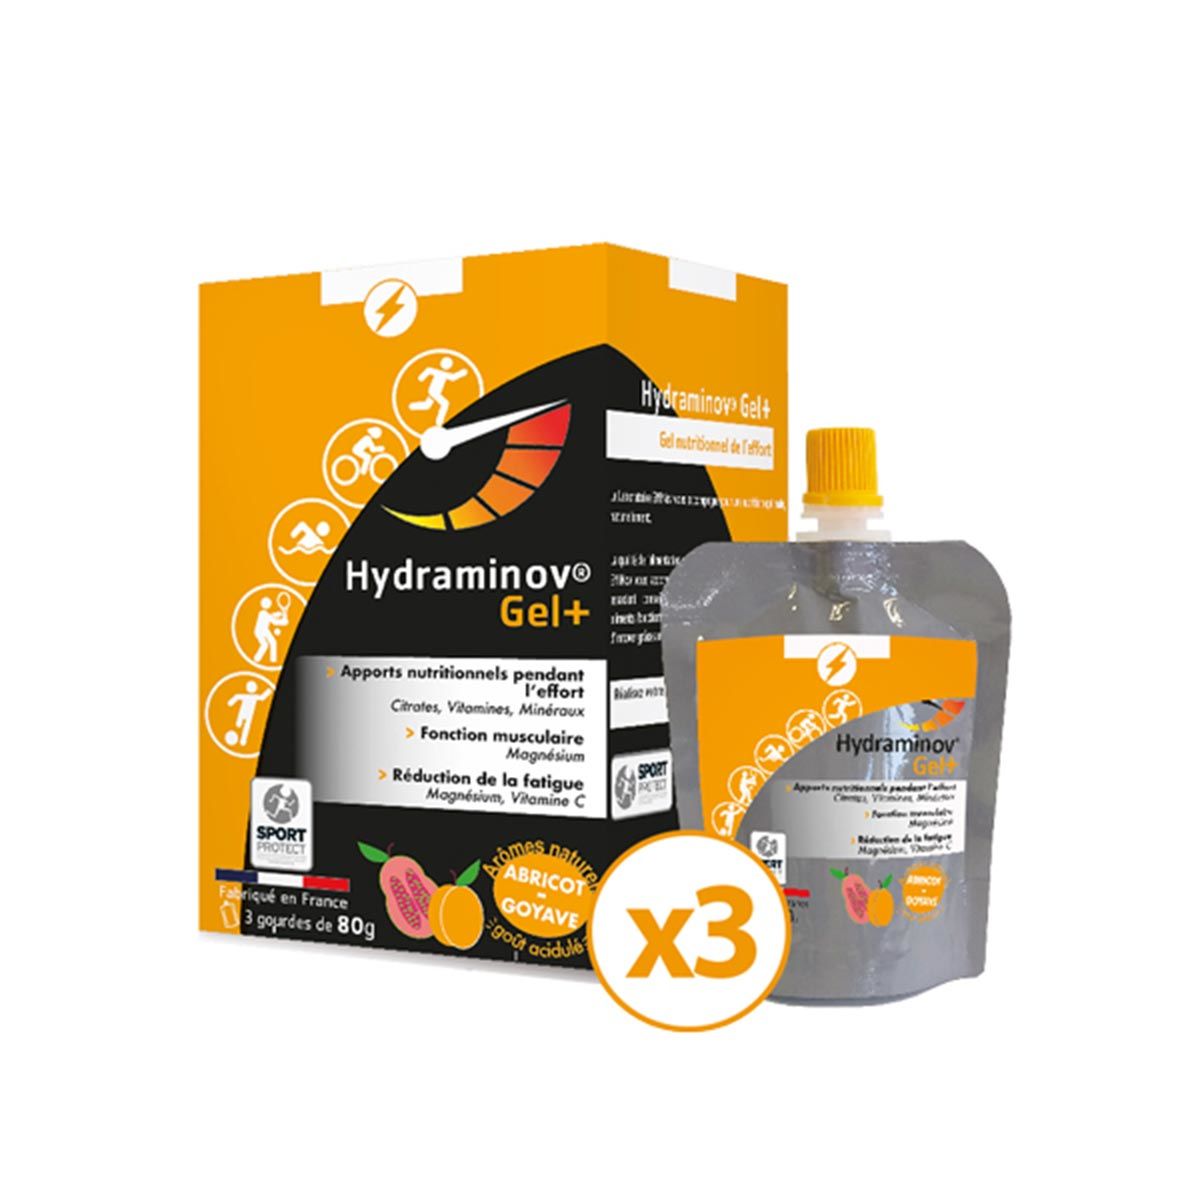 Hydraminov Gel+ - Gel nutritionnel Effinov x 3 - Abricot, goyave